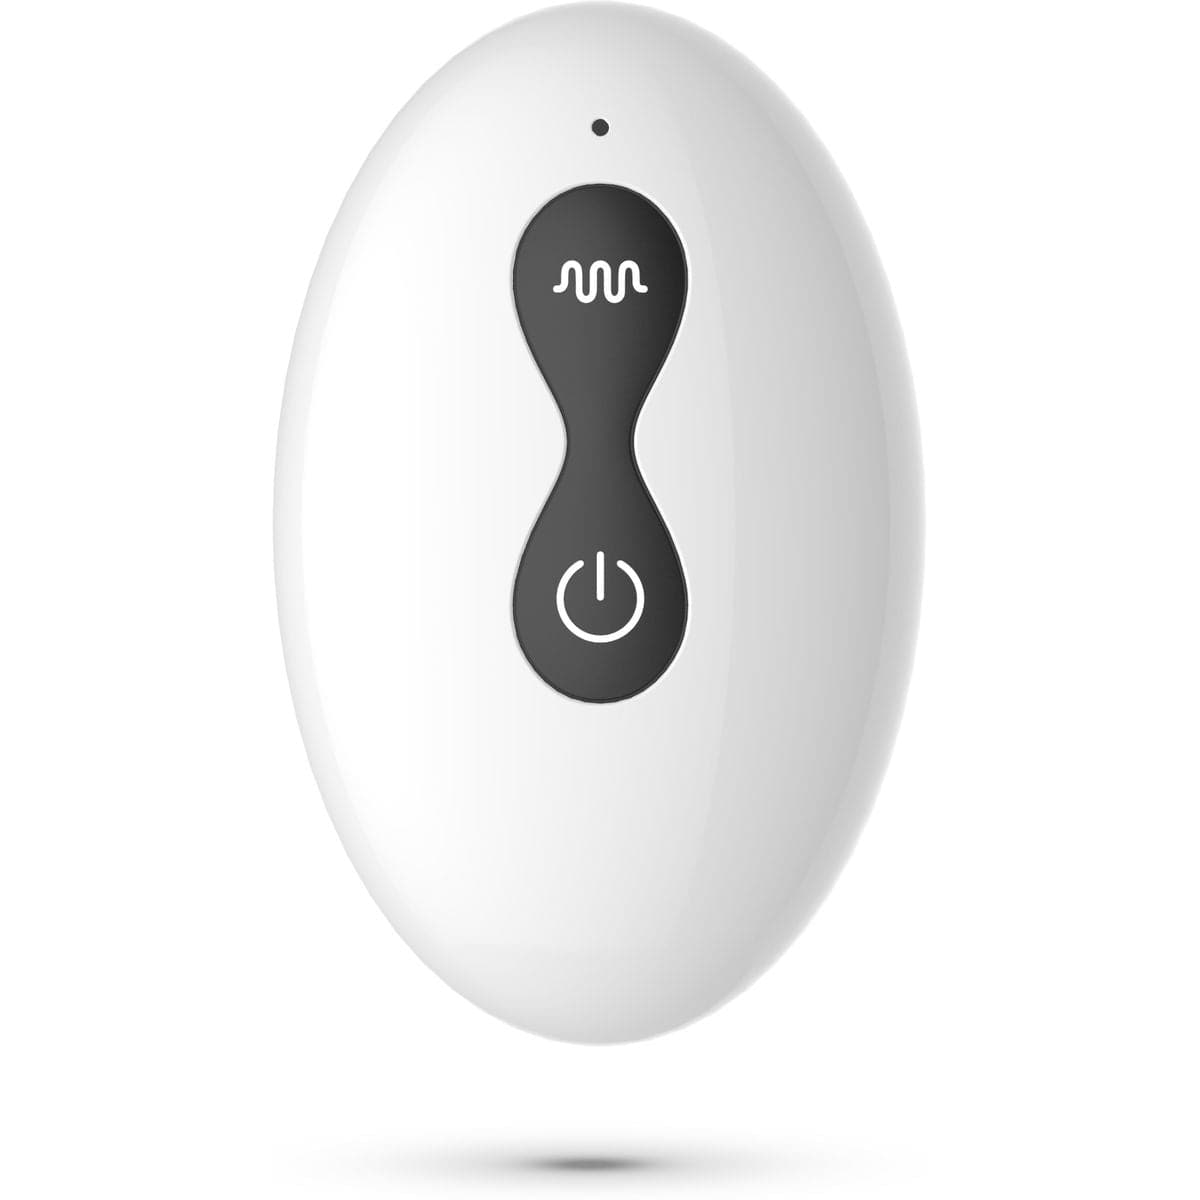 Estimulador Próstata Magoo Controlo Remoto, 11cm Ø3.7cm, 10movimentos e 10vibrações - Pérola SexShop